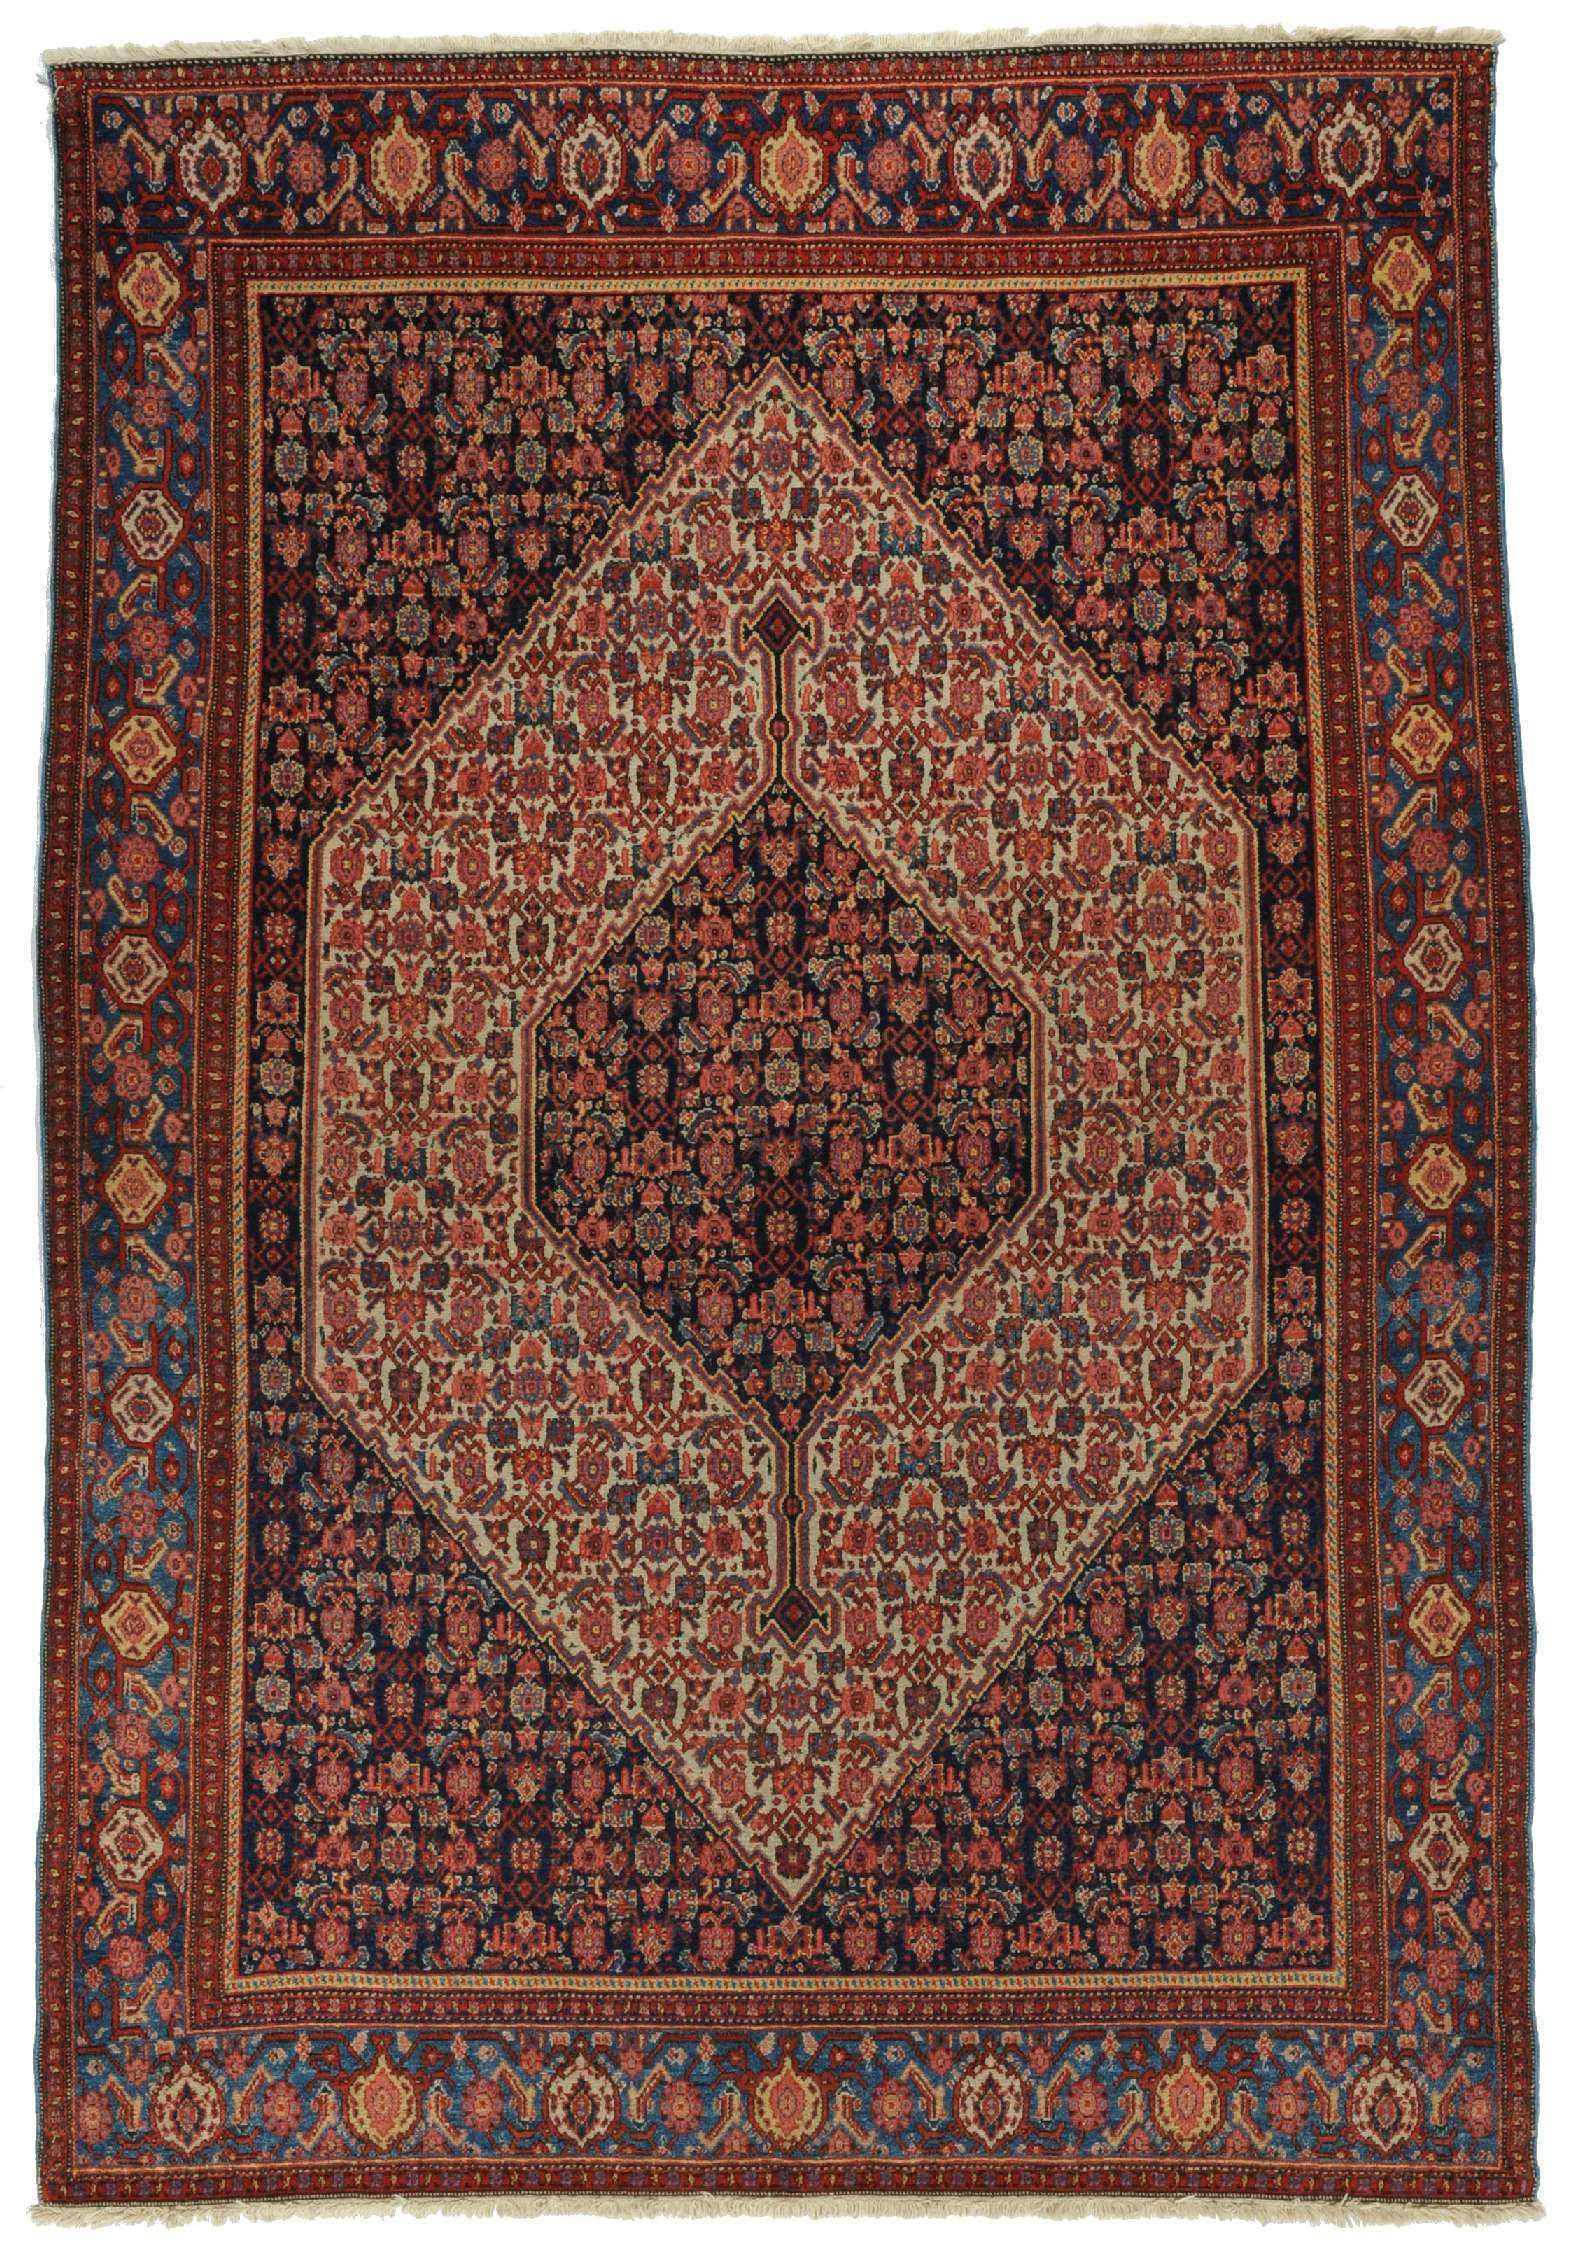 Senneh Herkunft Iran Alter Antik Lange 196 Breite 137 Perserteppich Teppich Persischer Teppich